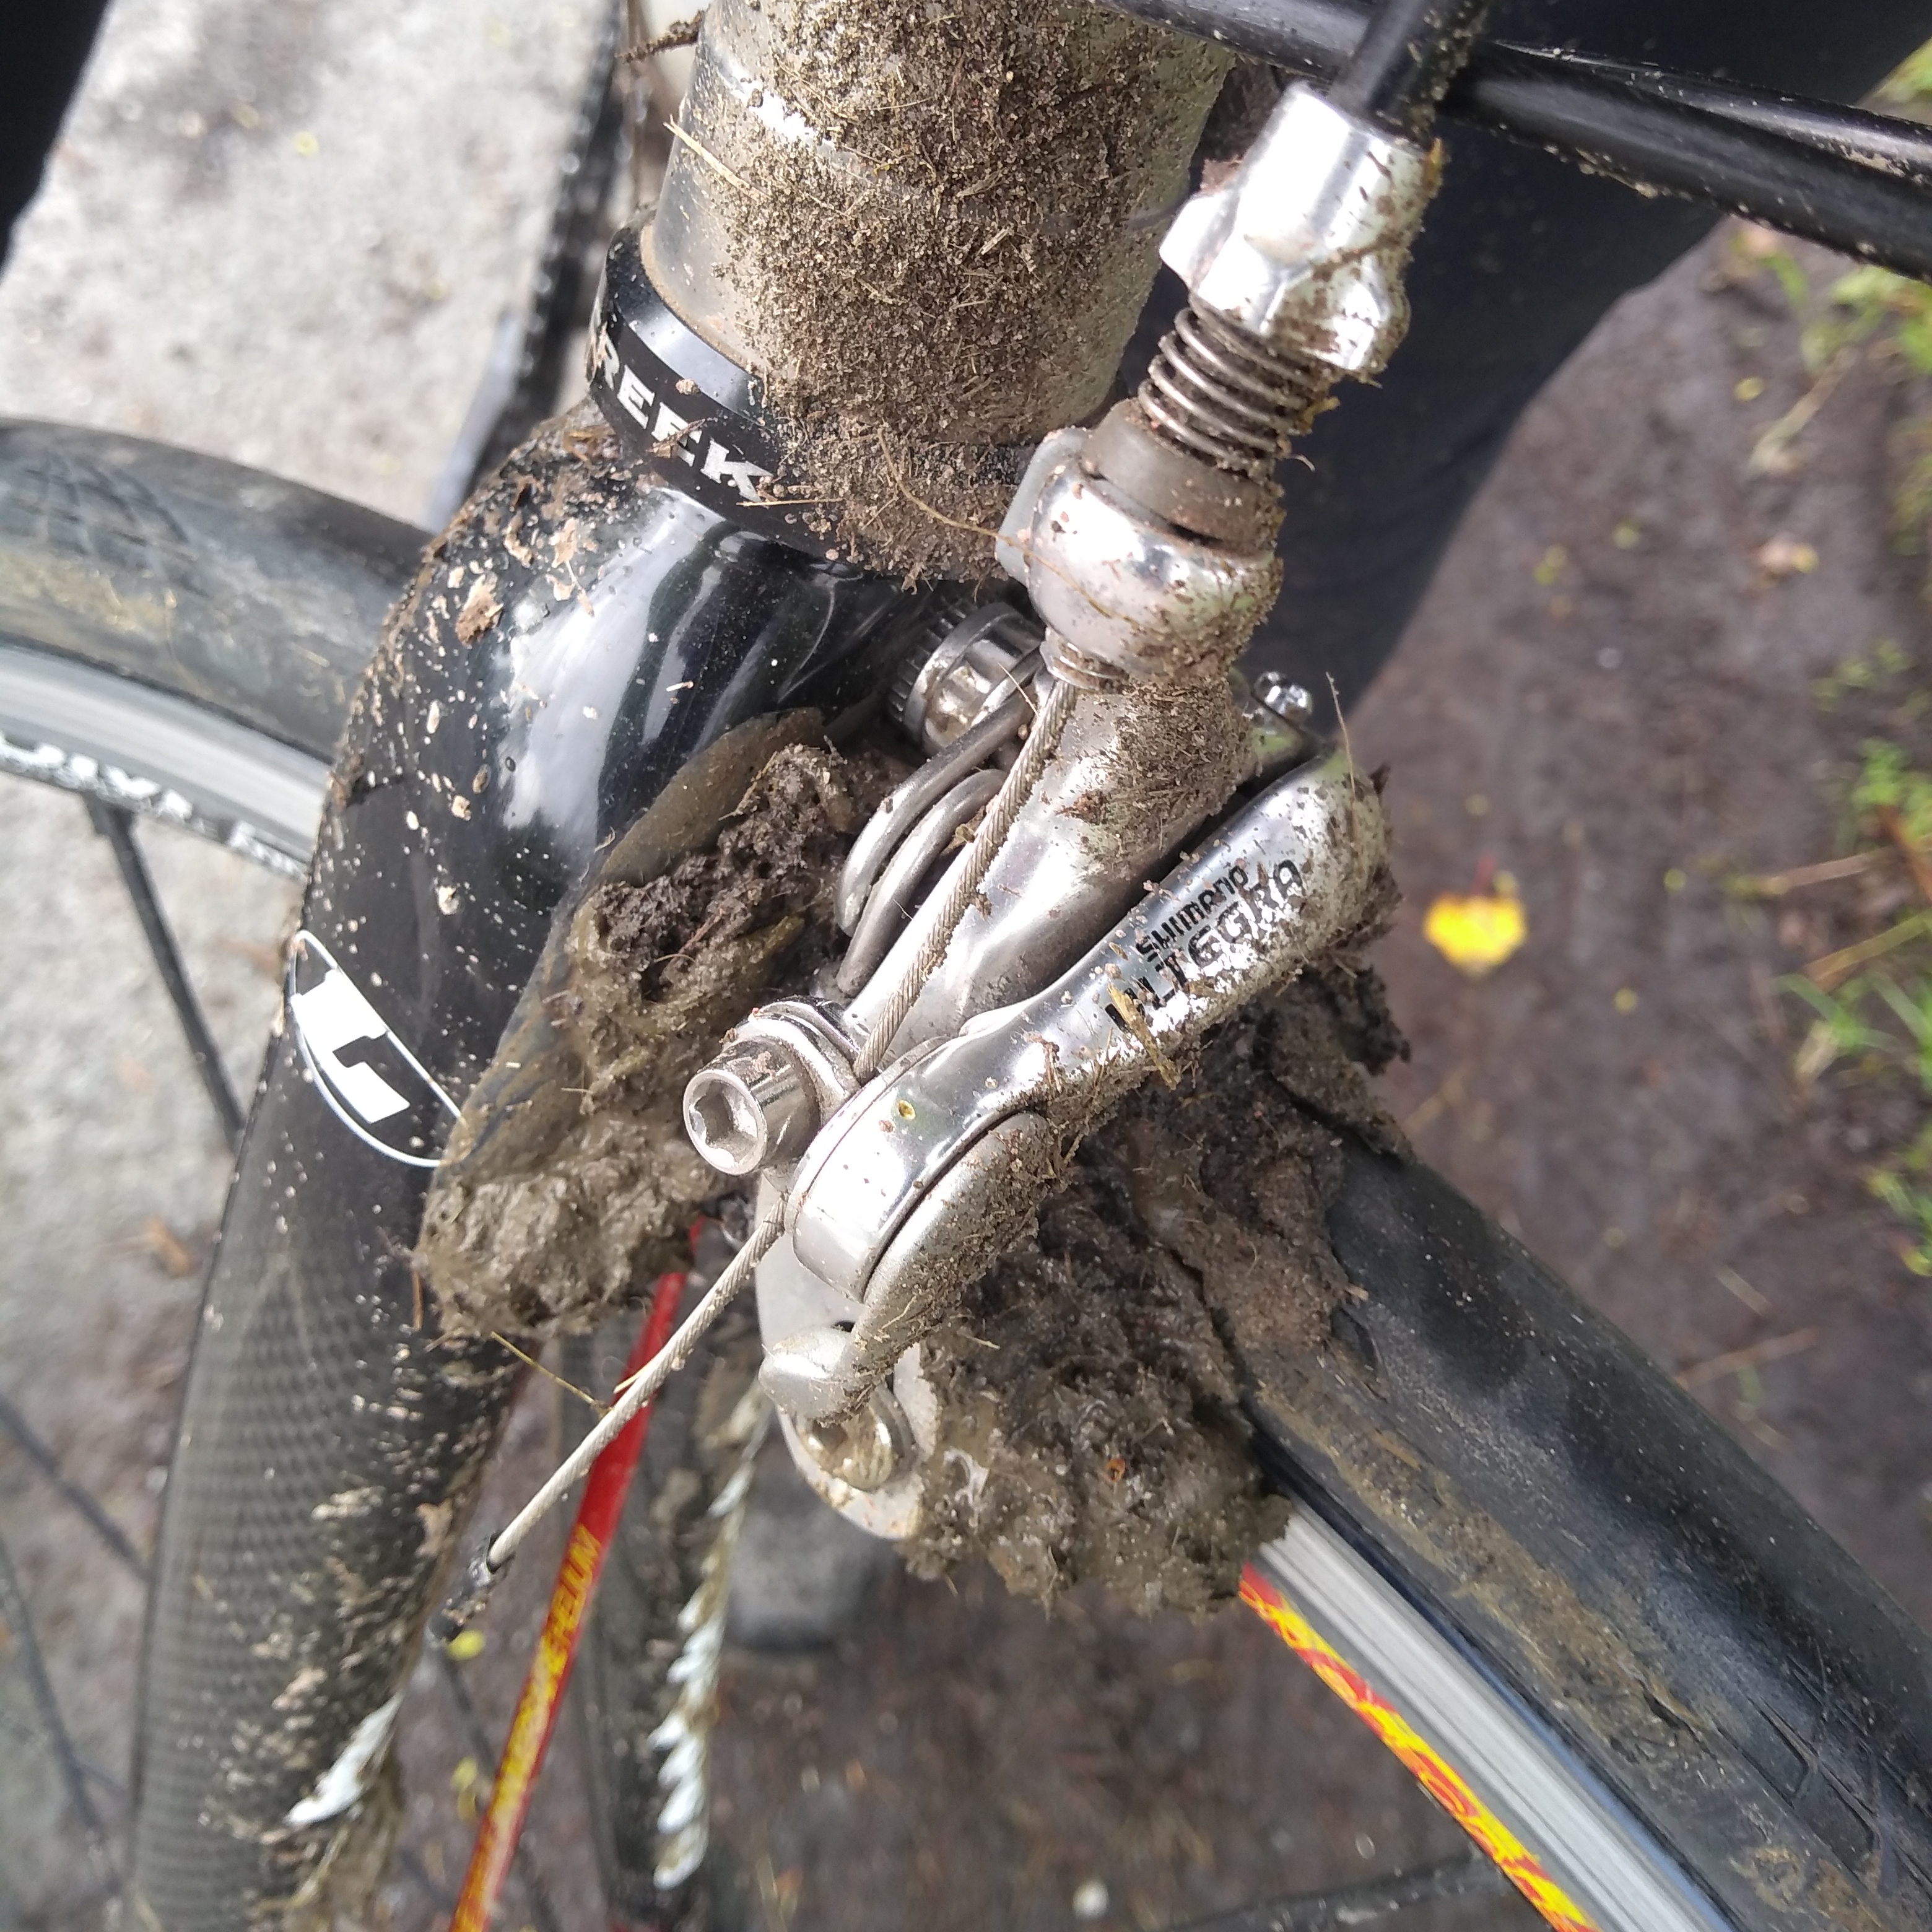 Muddy bike brakes